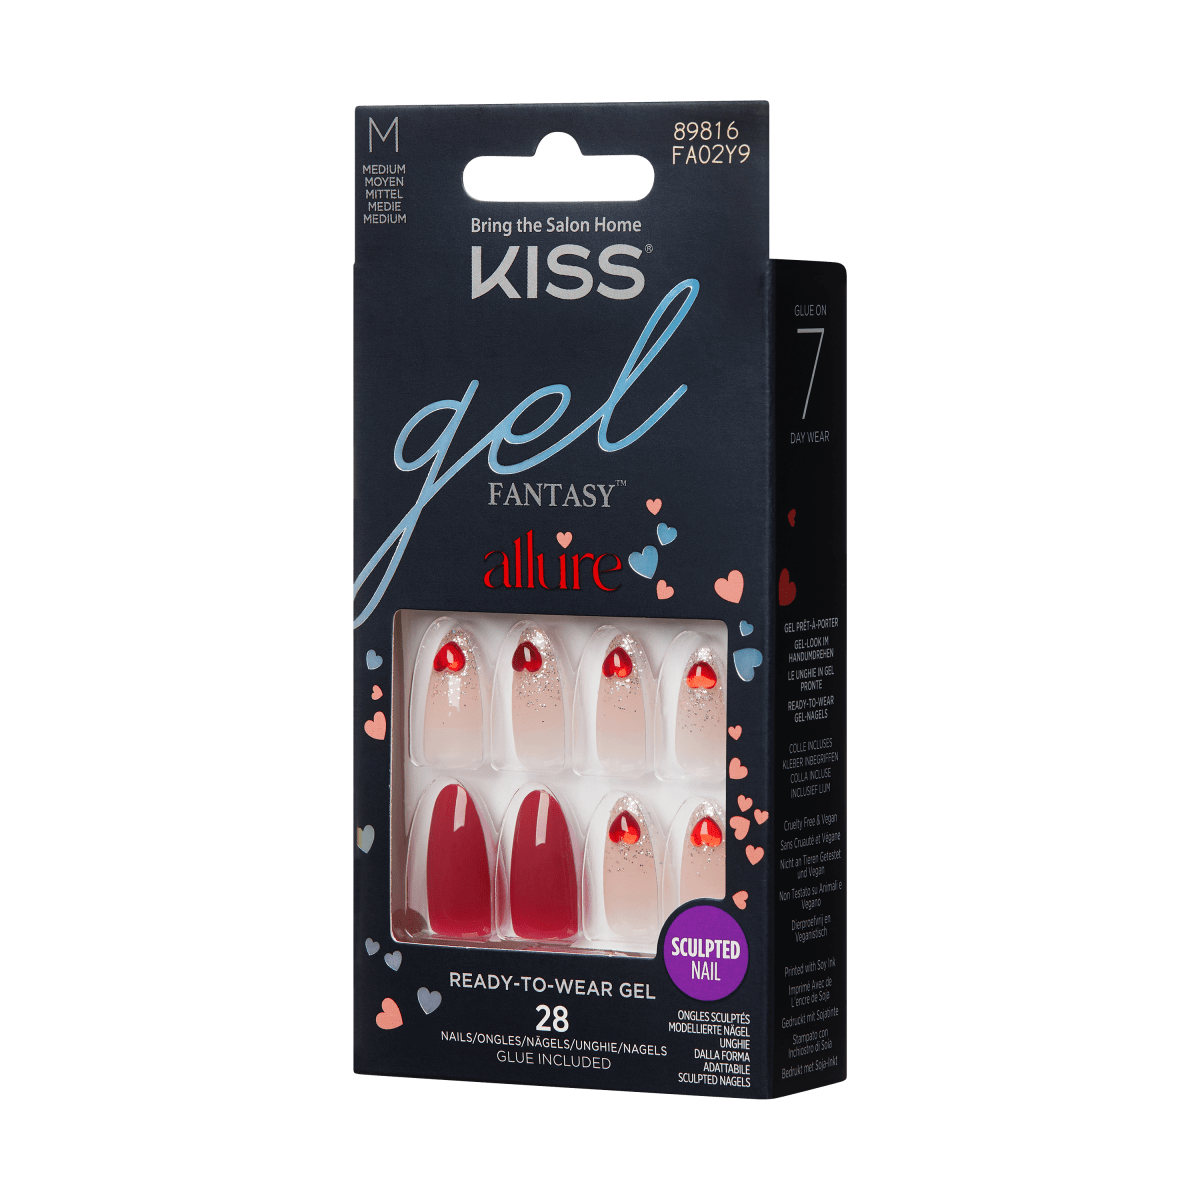 KISS Gel Fantasy Allure Nails - We Mist – KISS USA